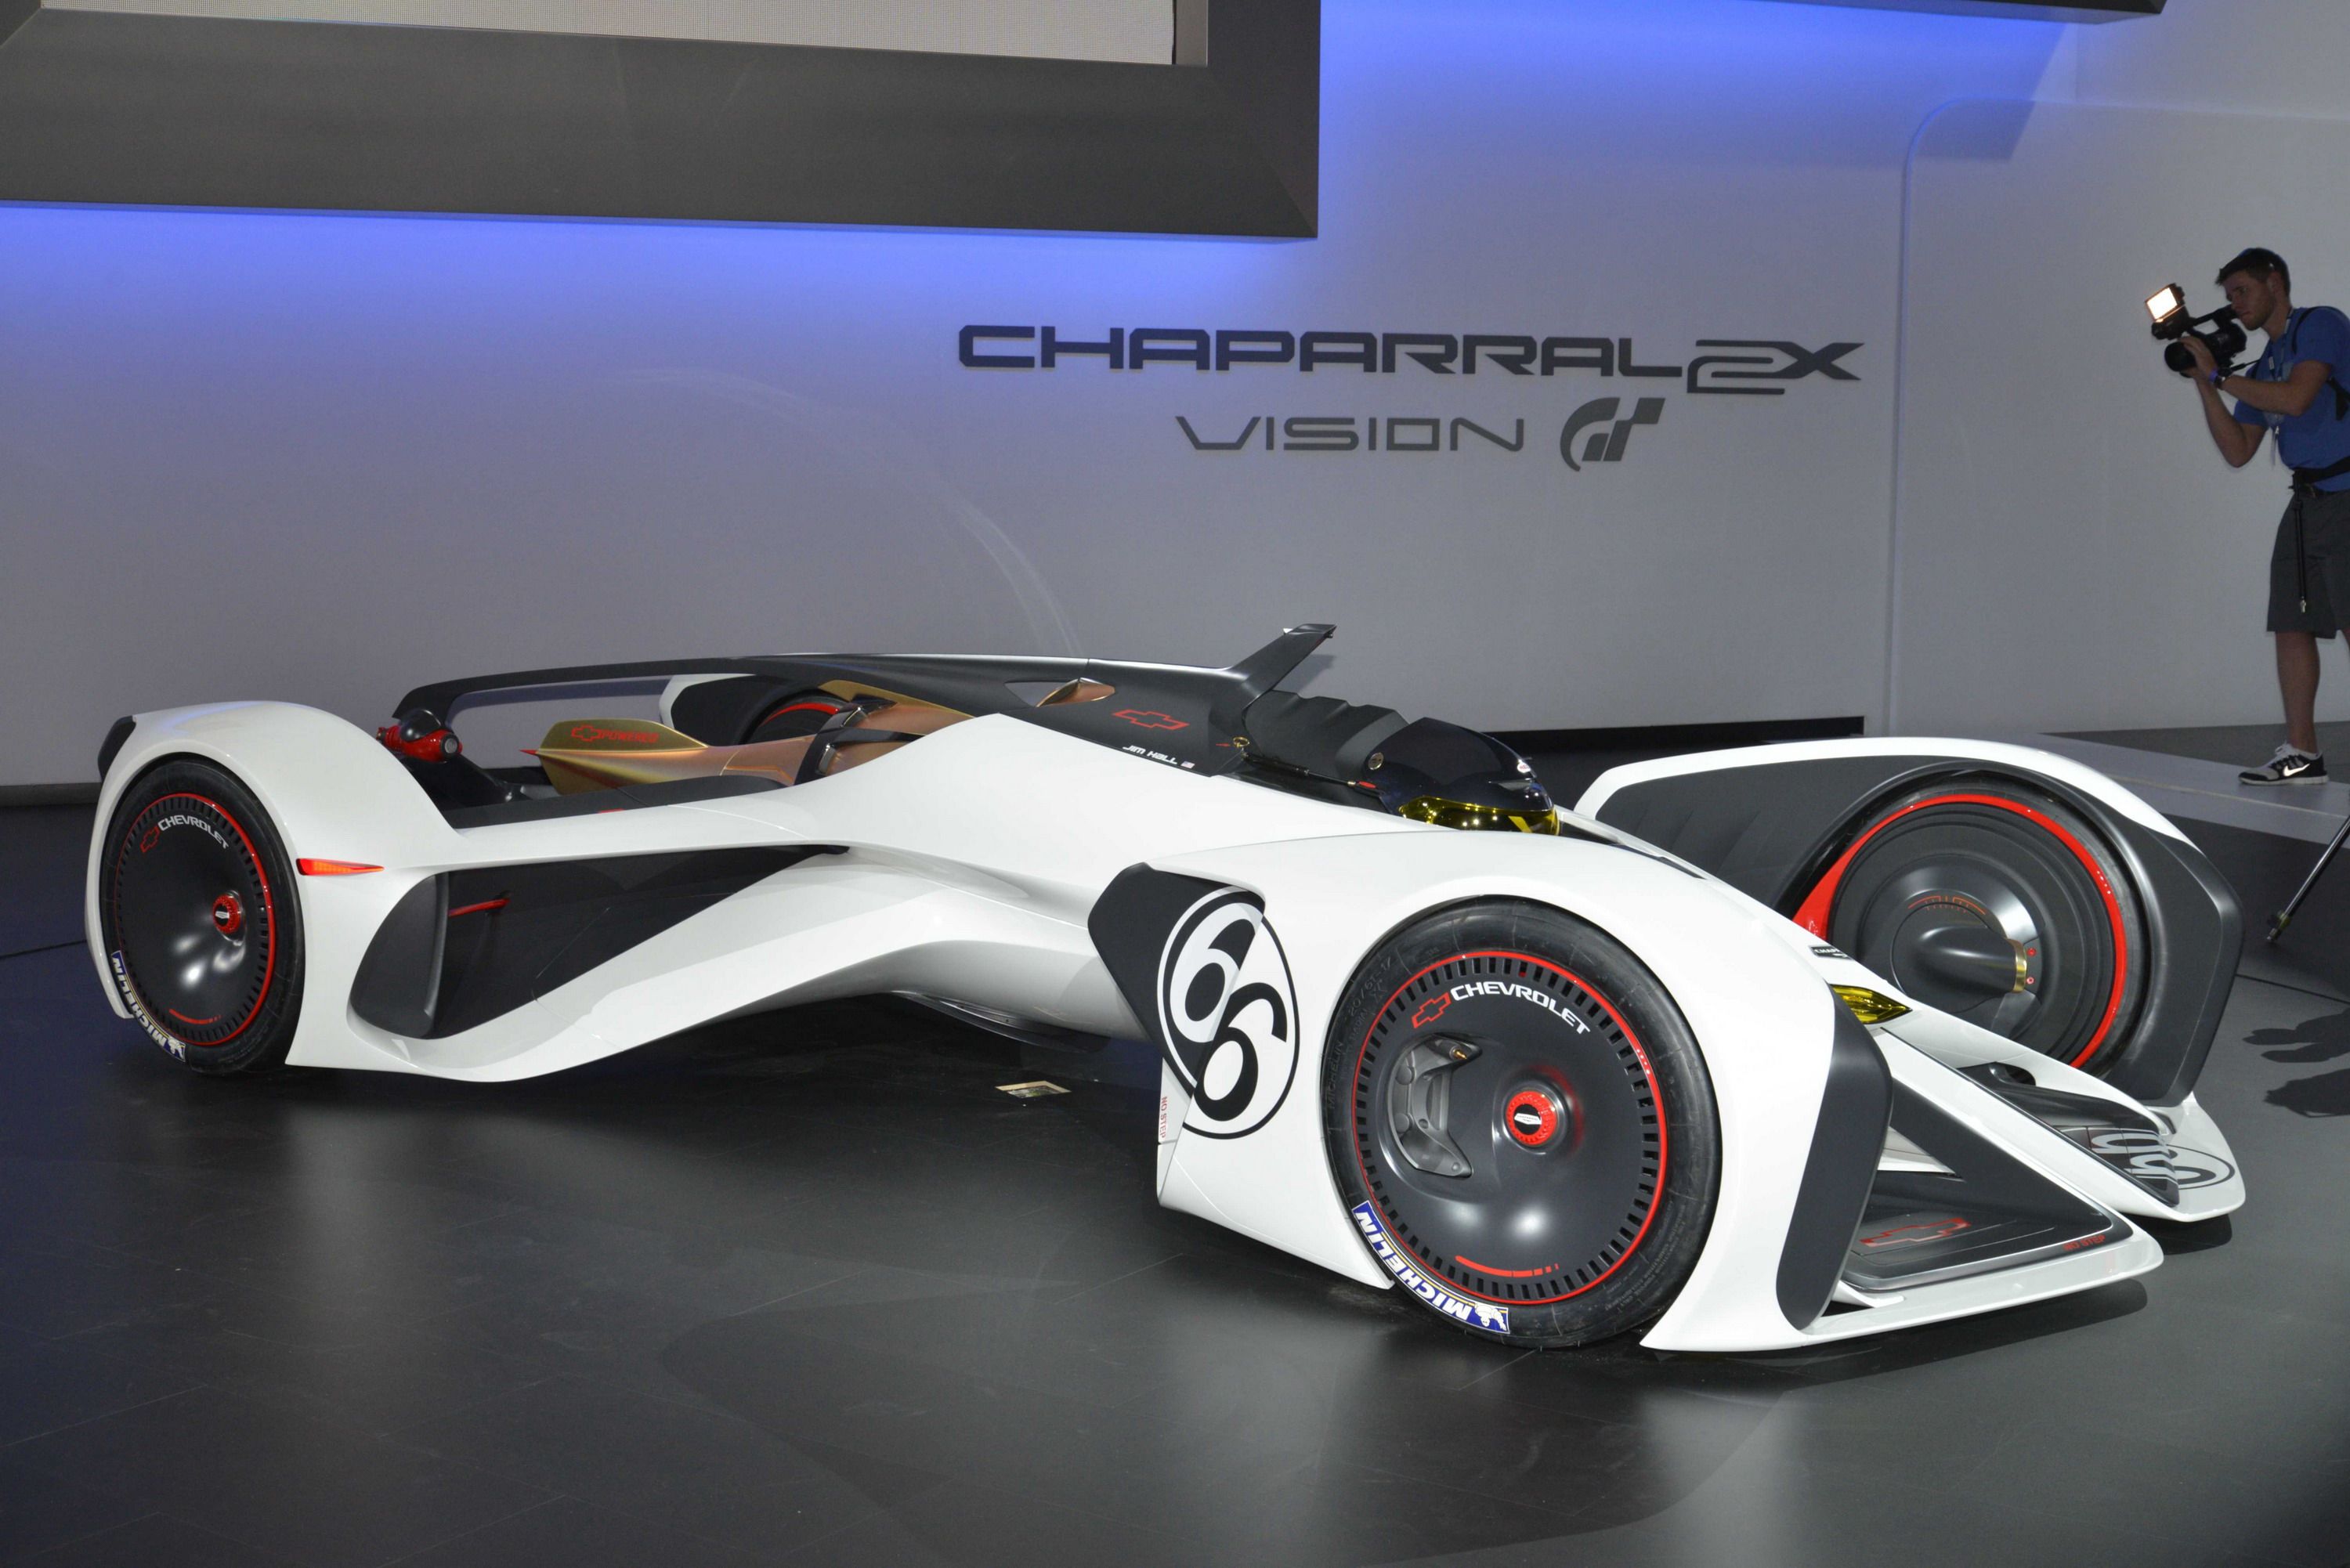 2015 Chevrolet Chaparral 2X VGT Concept